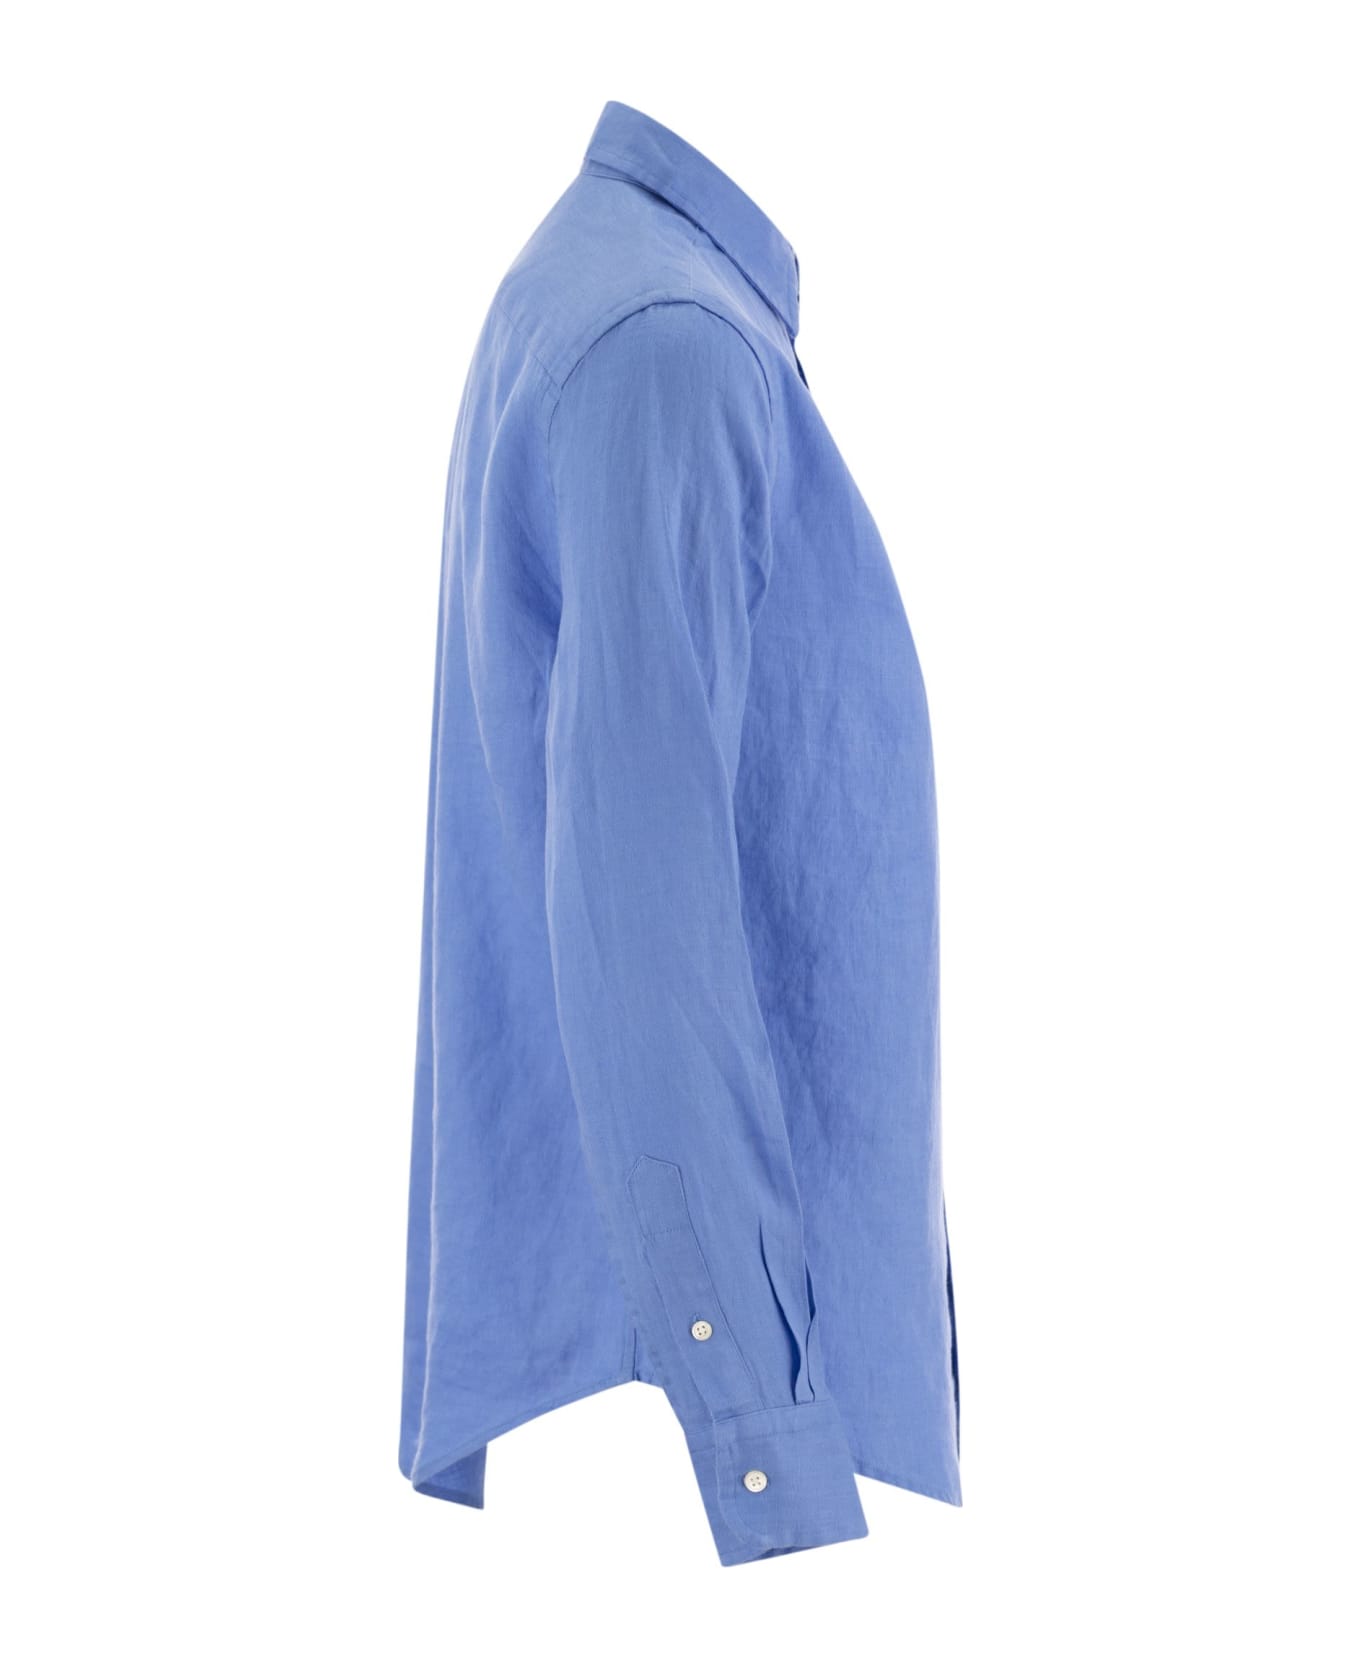 Polo Ralph Lauren Linen Shirt - Light Blue シャツ